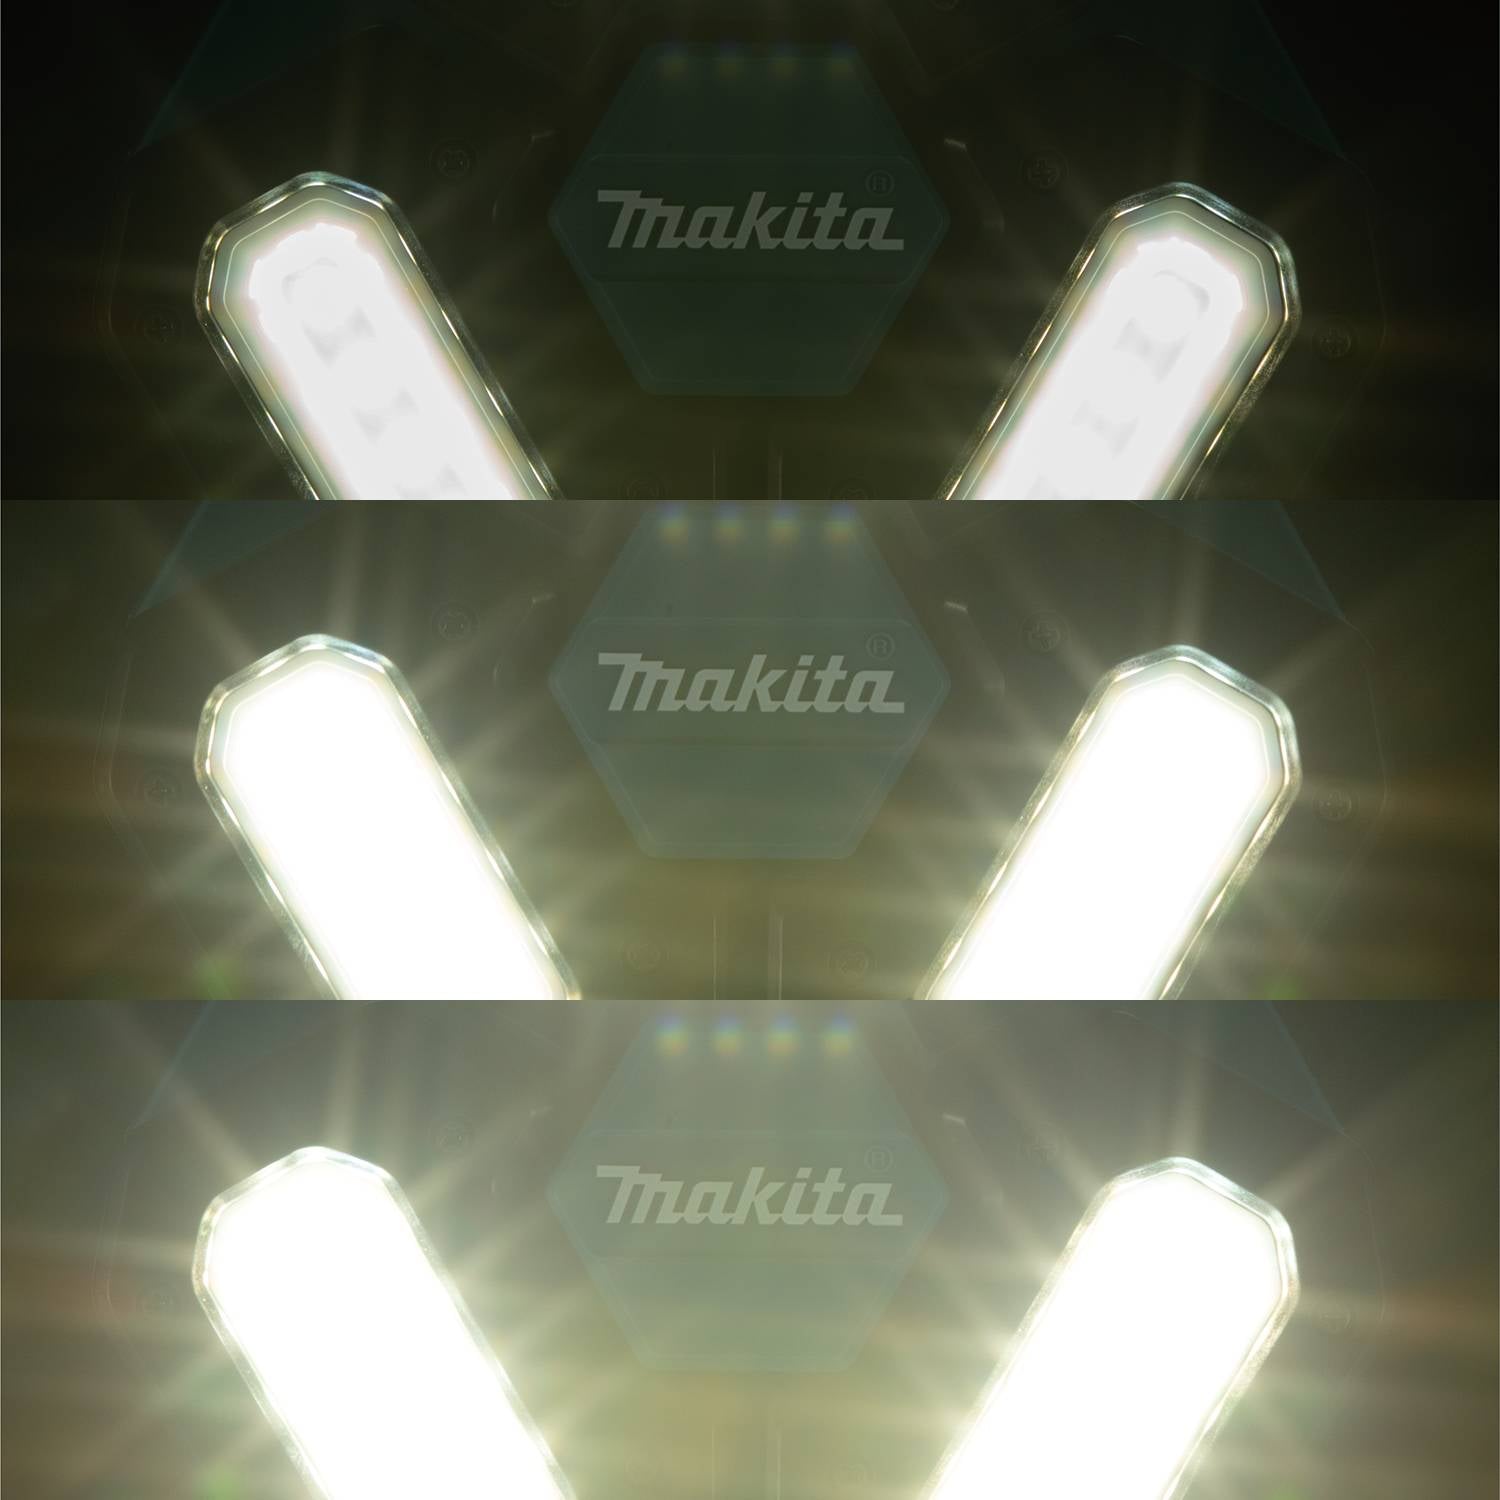 Makita DML814 18V LXT LED Tower Light (Tool Only)